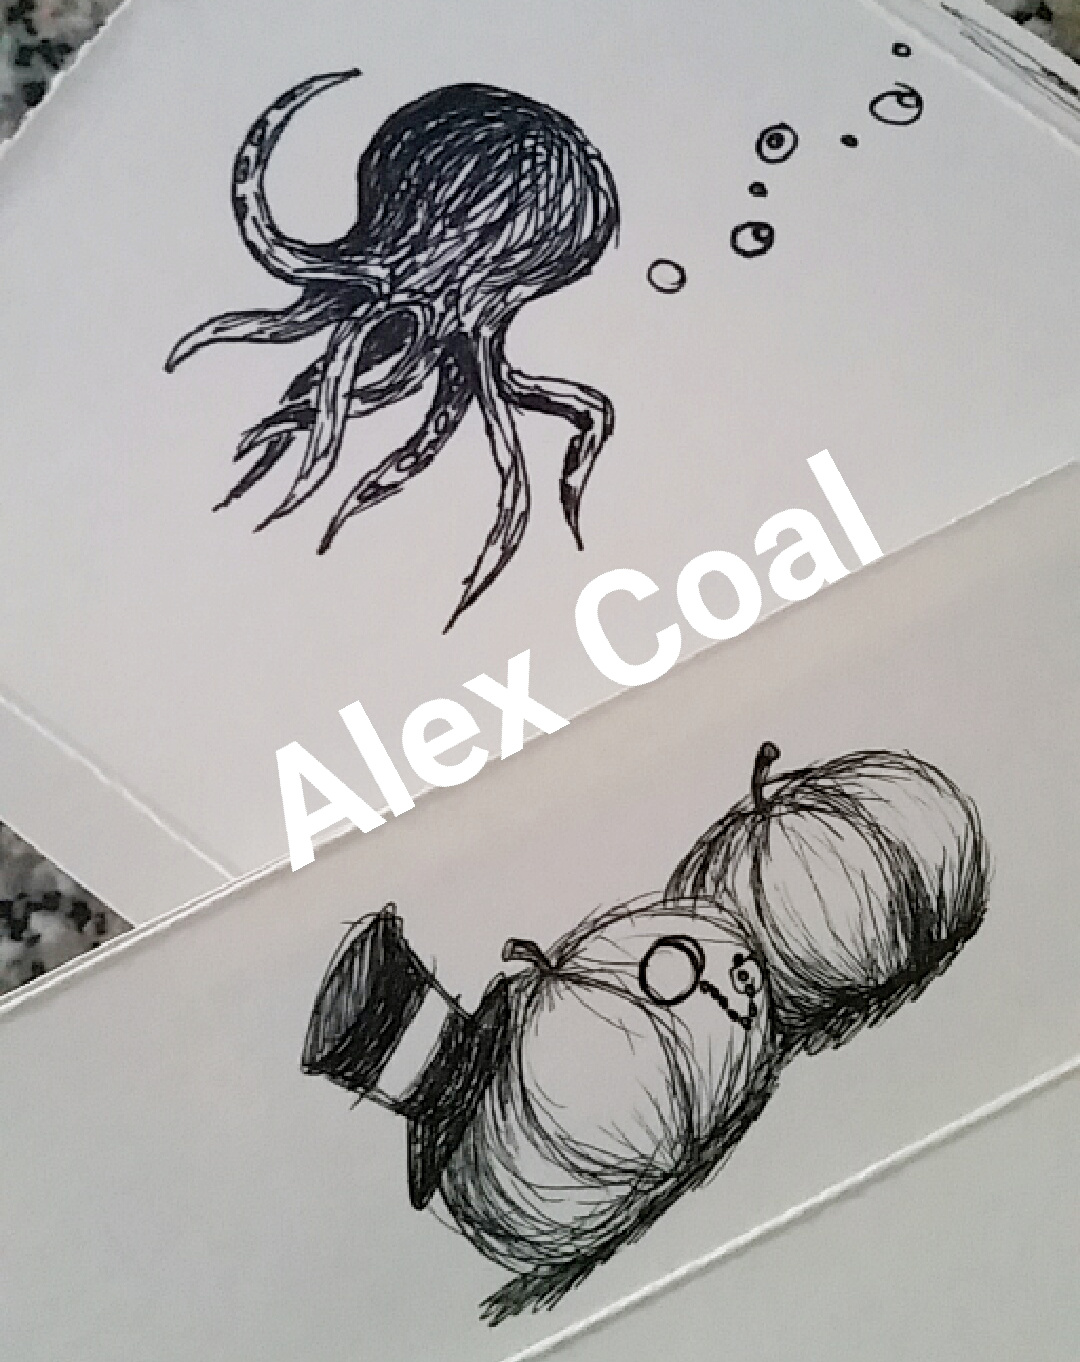 Alex Coal artwork